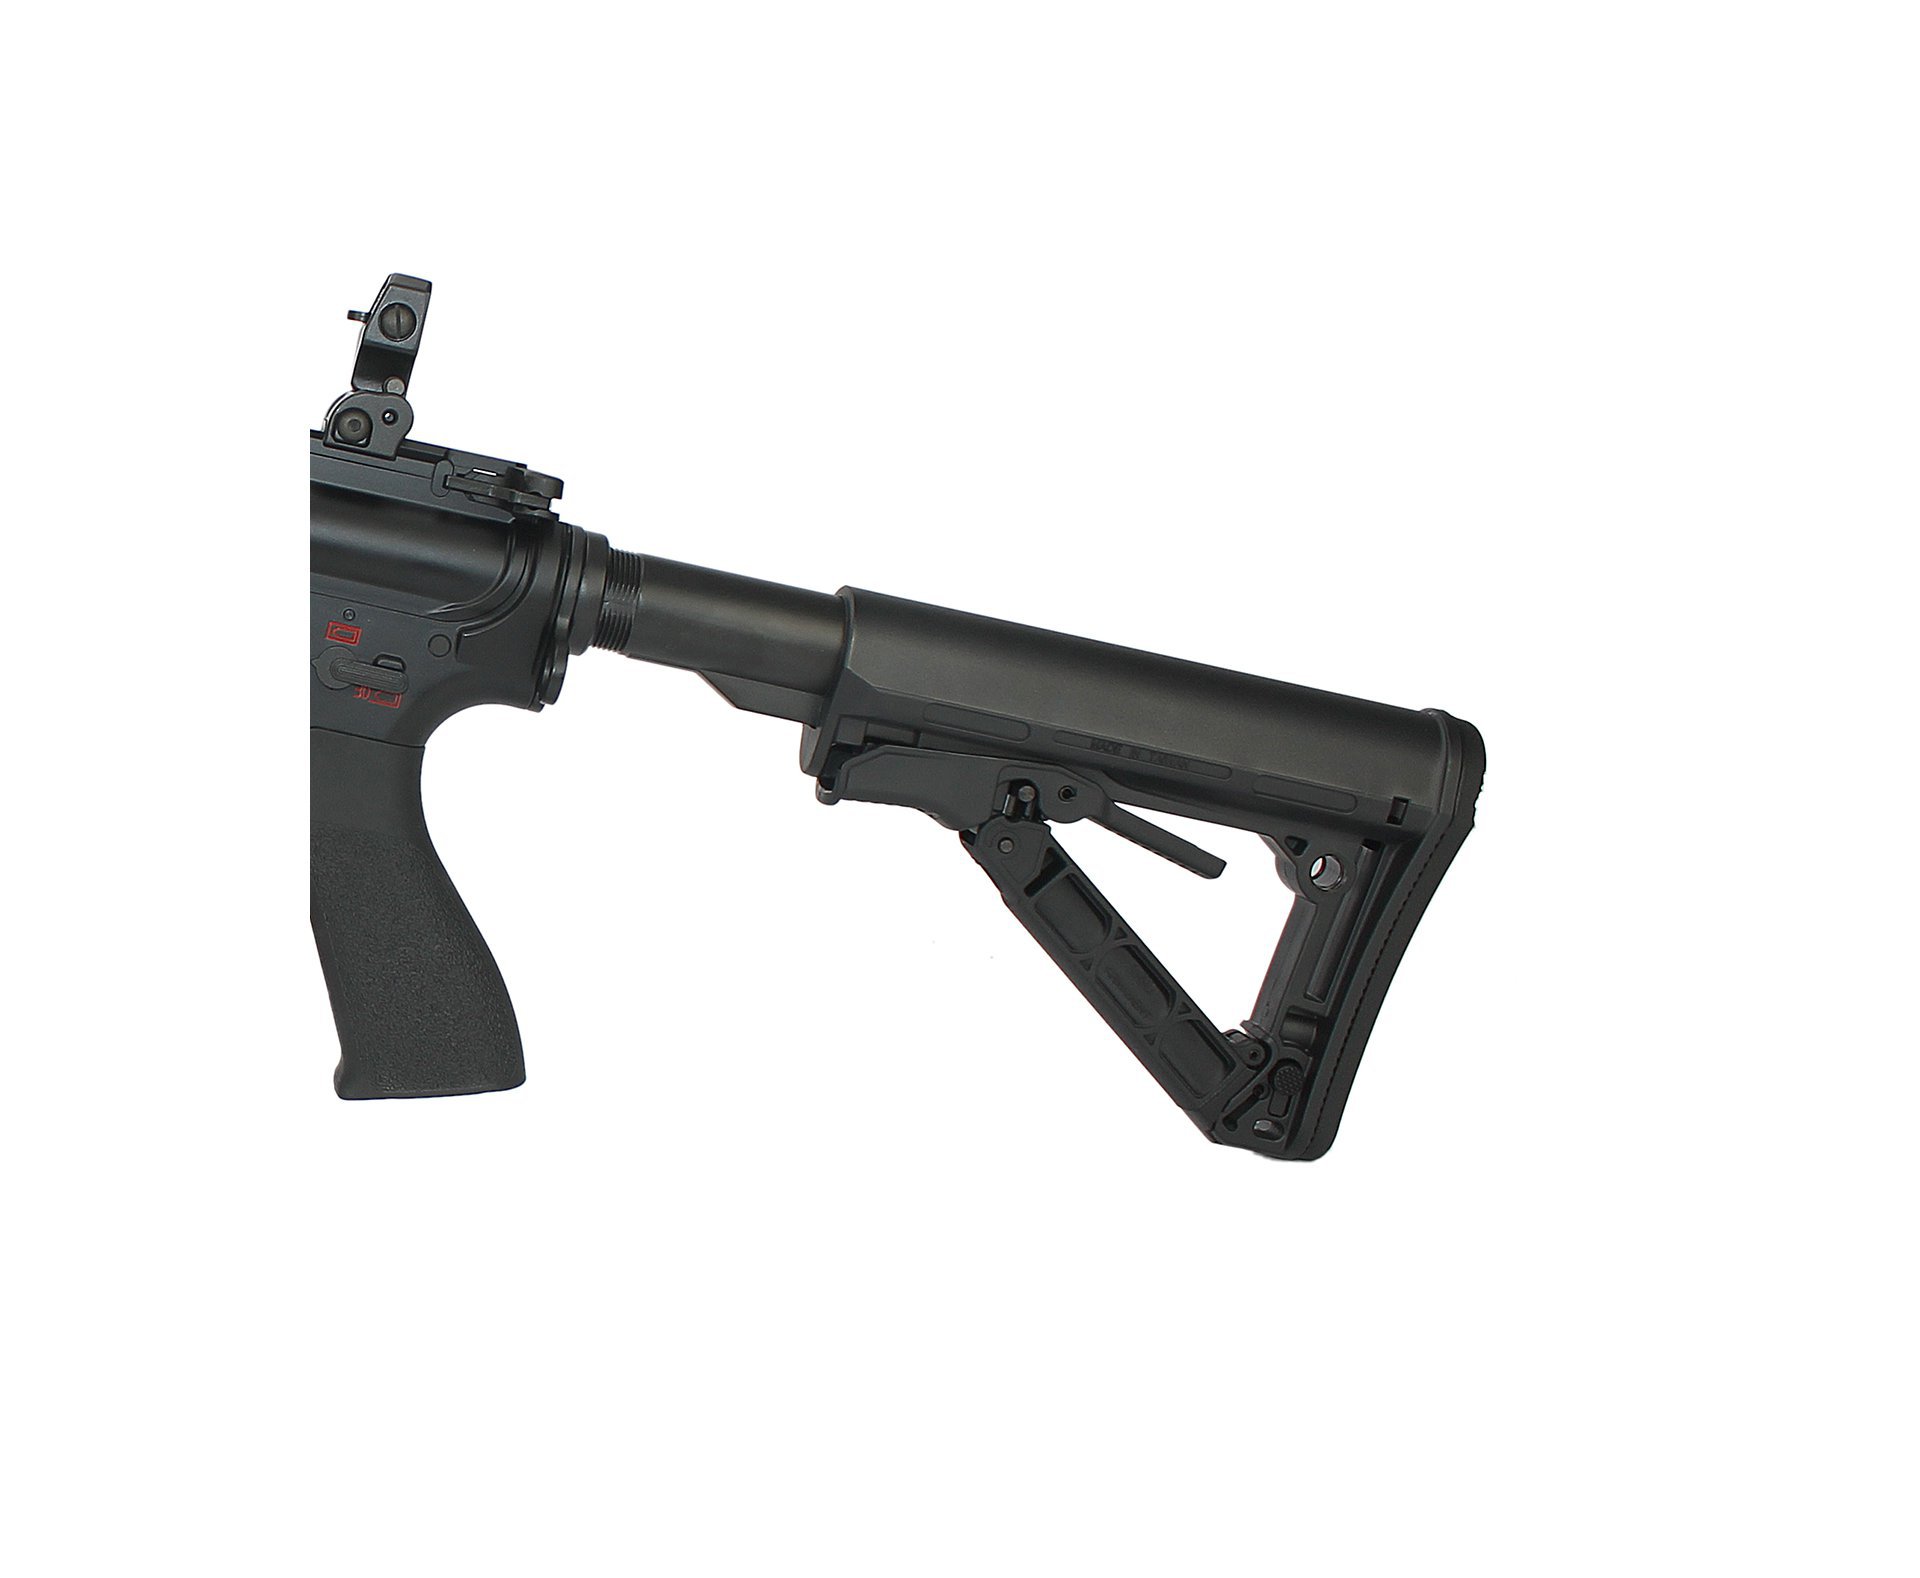 Rifle De Airsoft G&g Hb16 Mod 0 - Cal 6.0mm - Bivolt